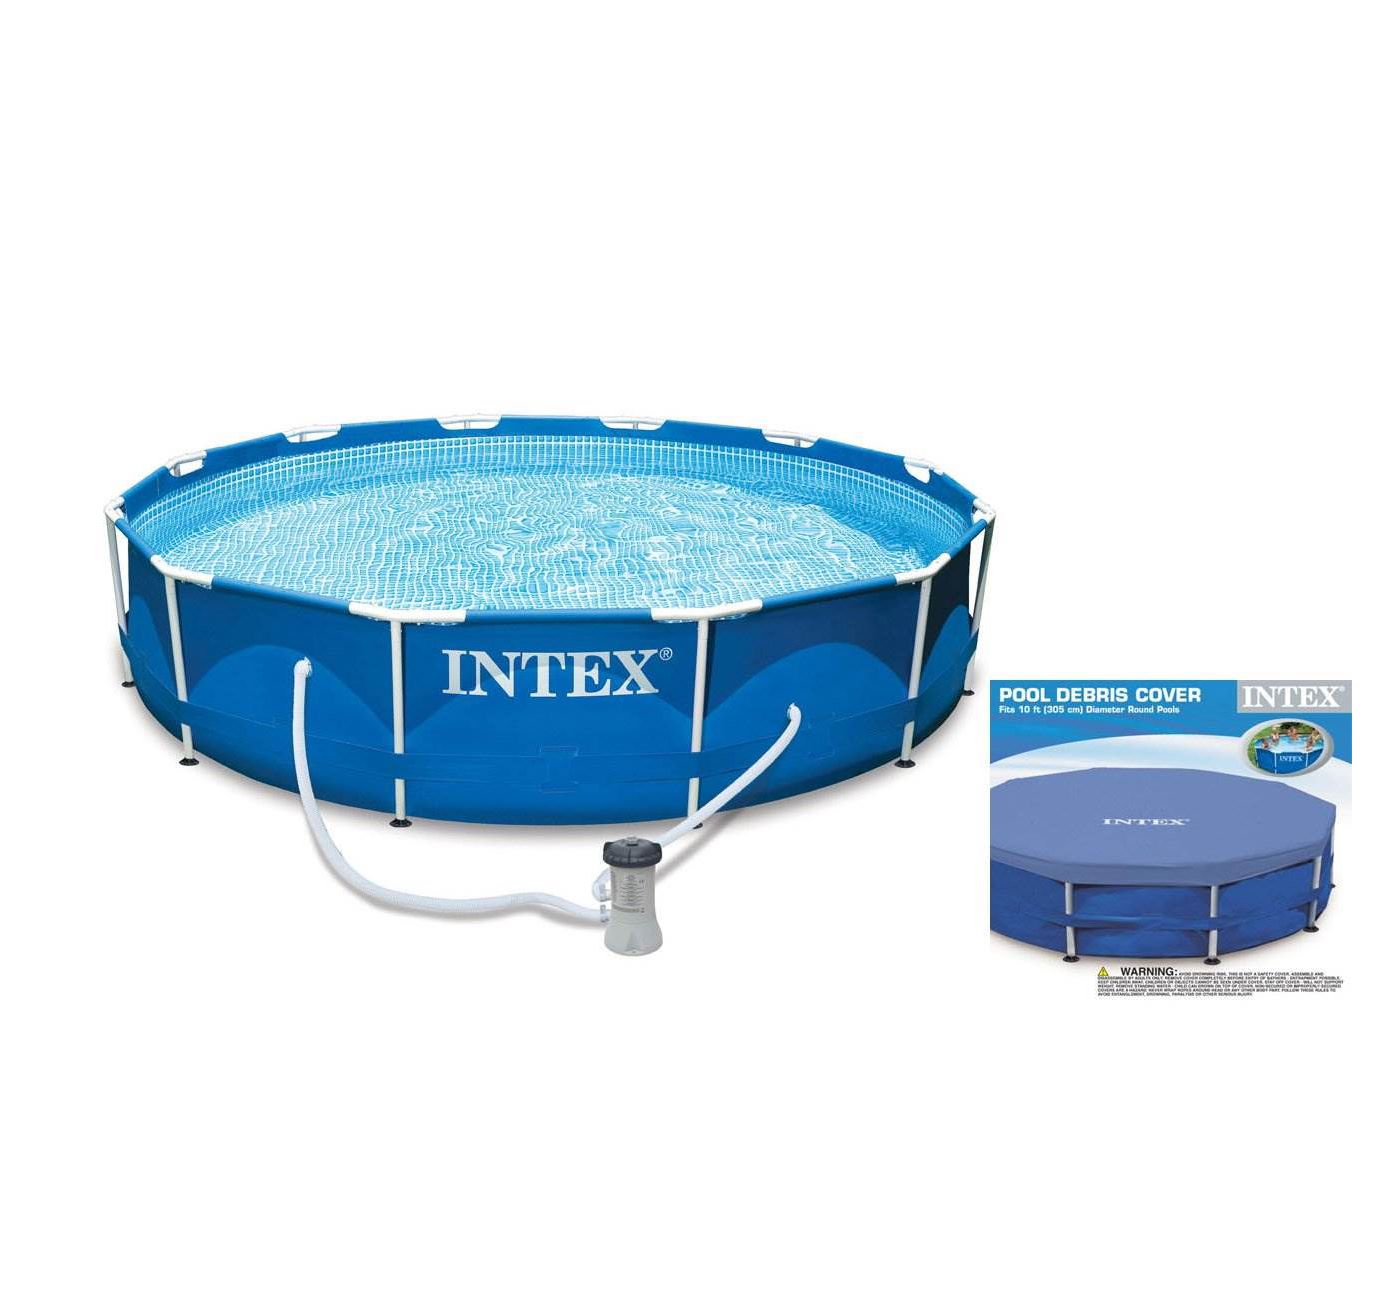 Intex 10ft x 30in Metal Frame Swimming Pool Set w/ Filter Pump & Debris Cover - image 1 of 6